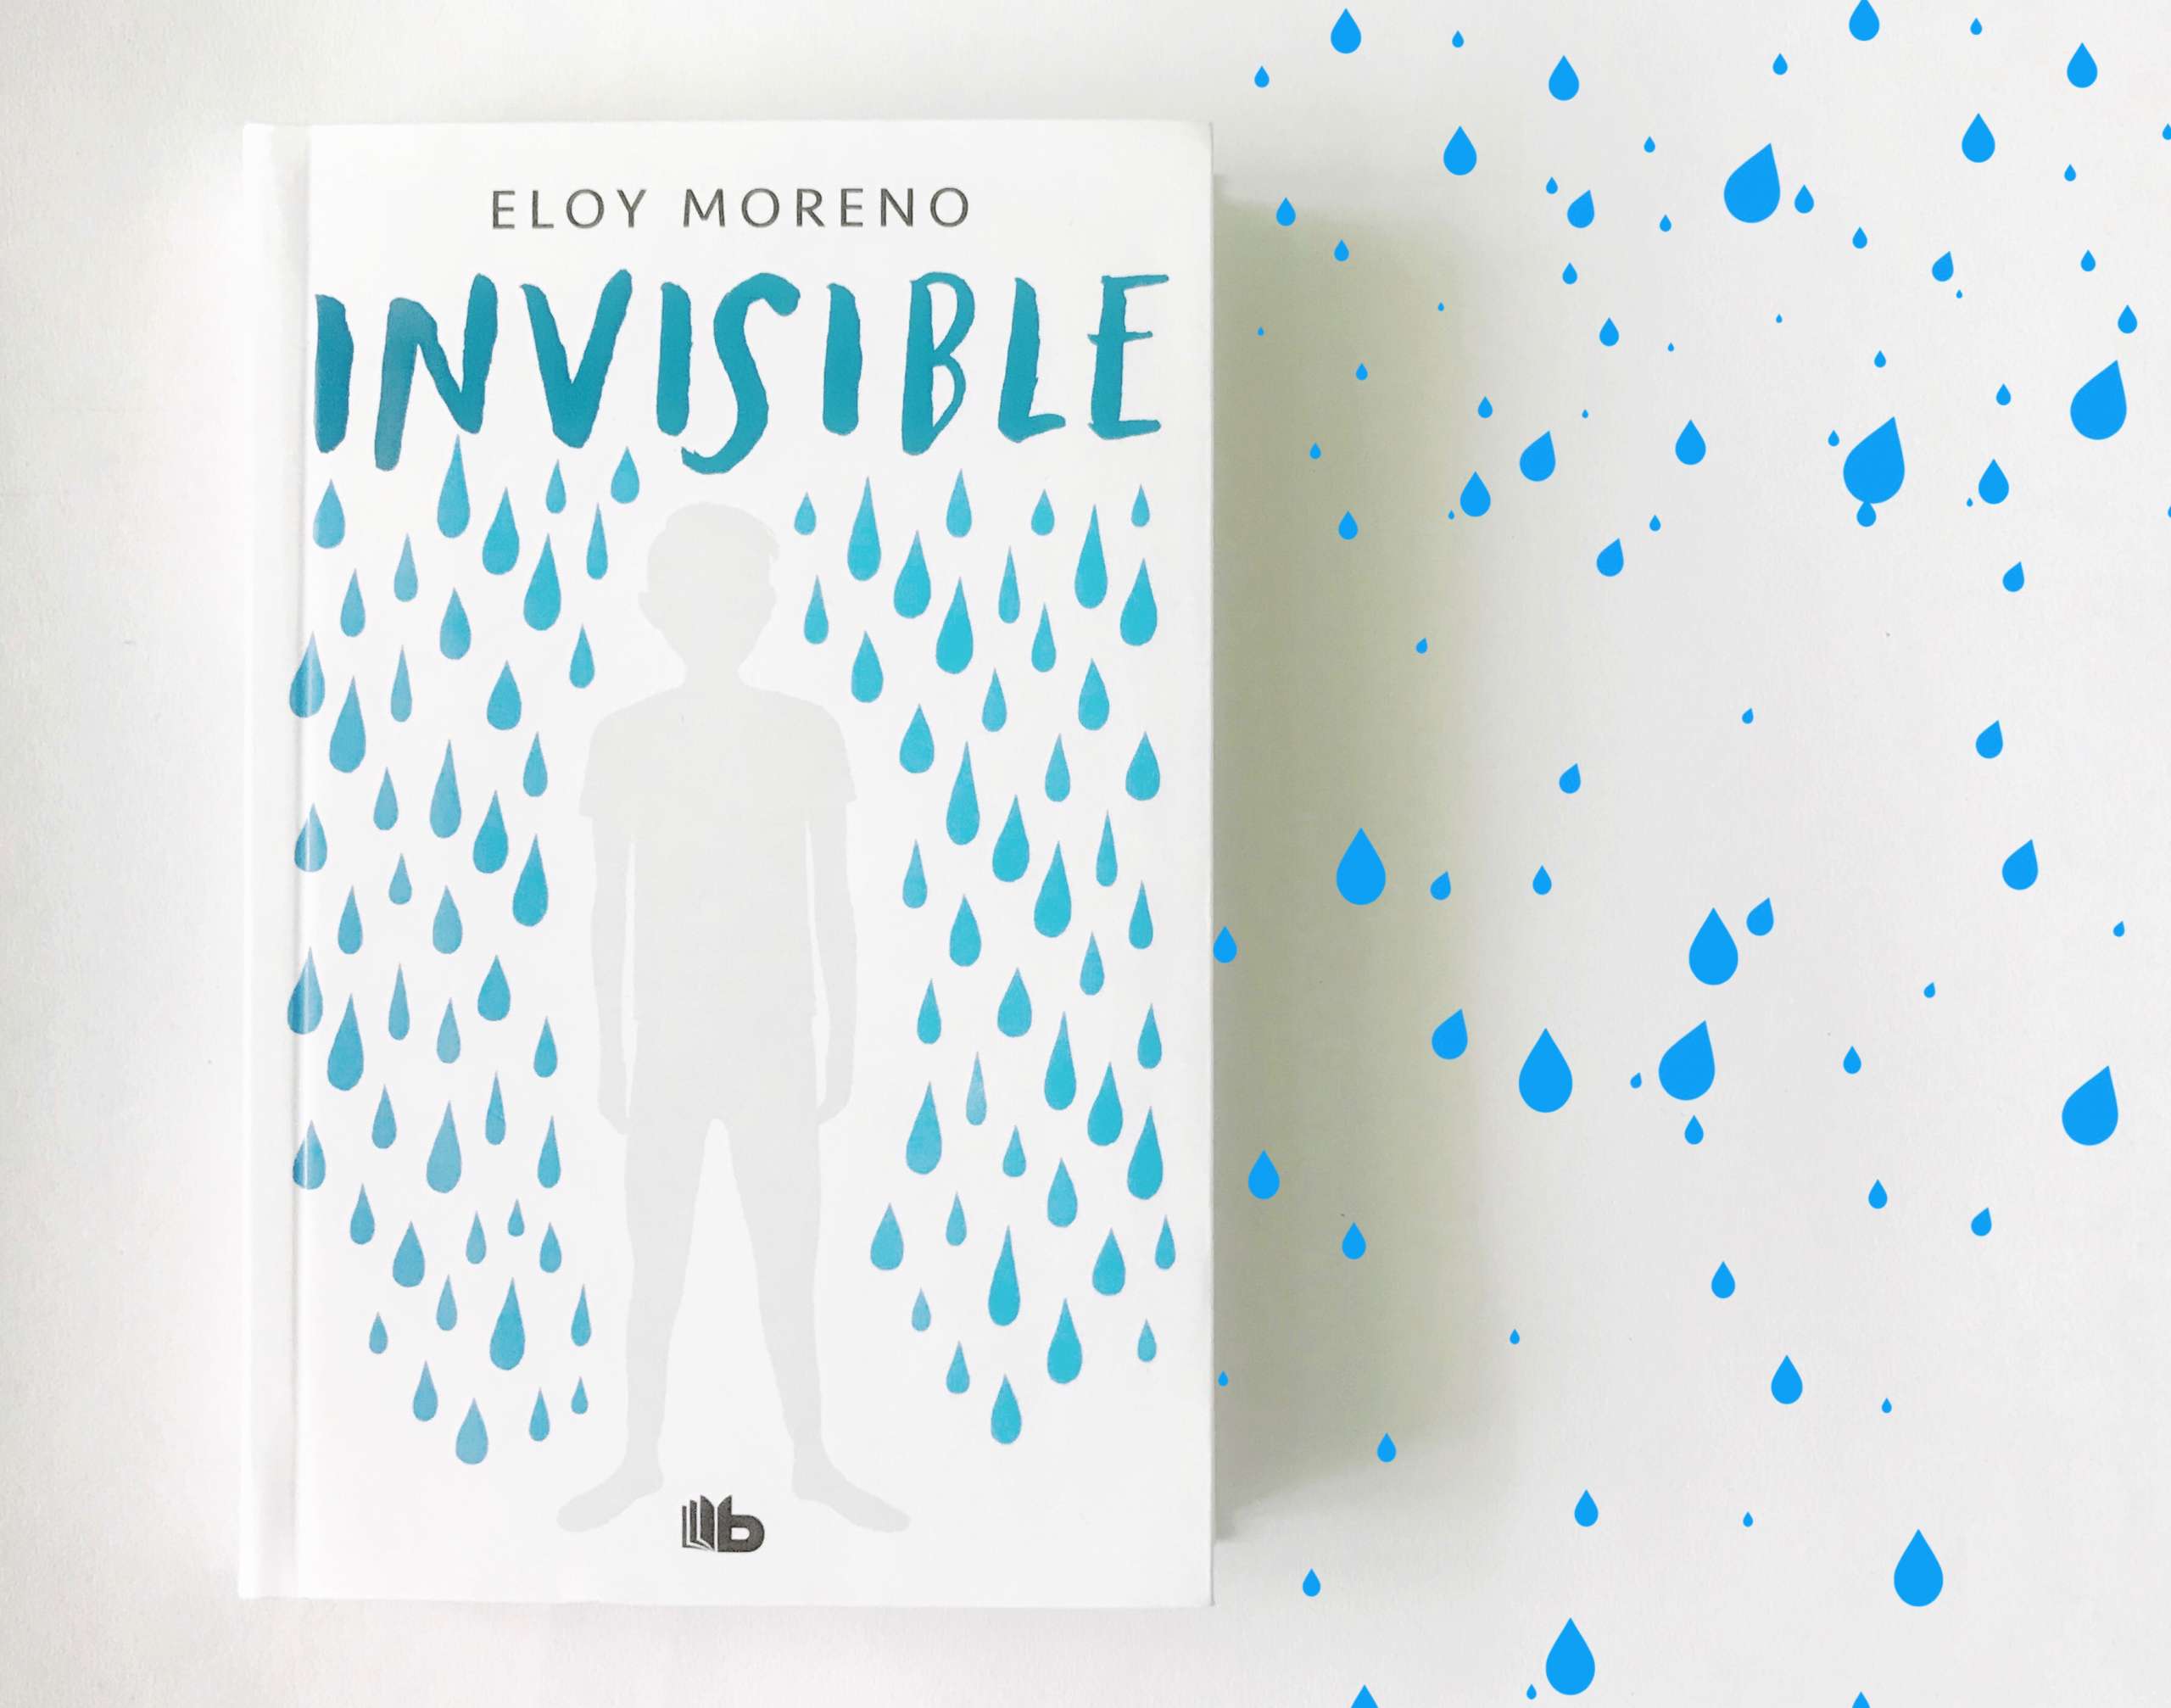 Invisible, un libro para visibilizar